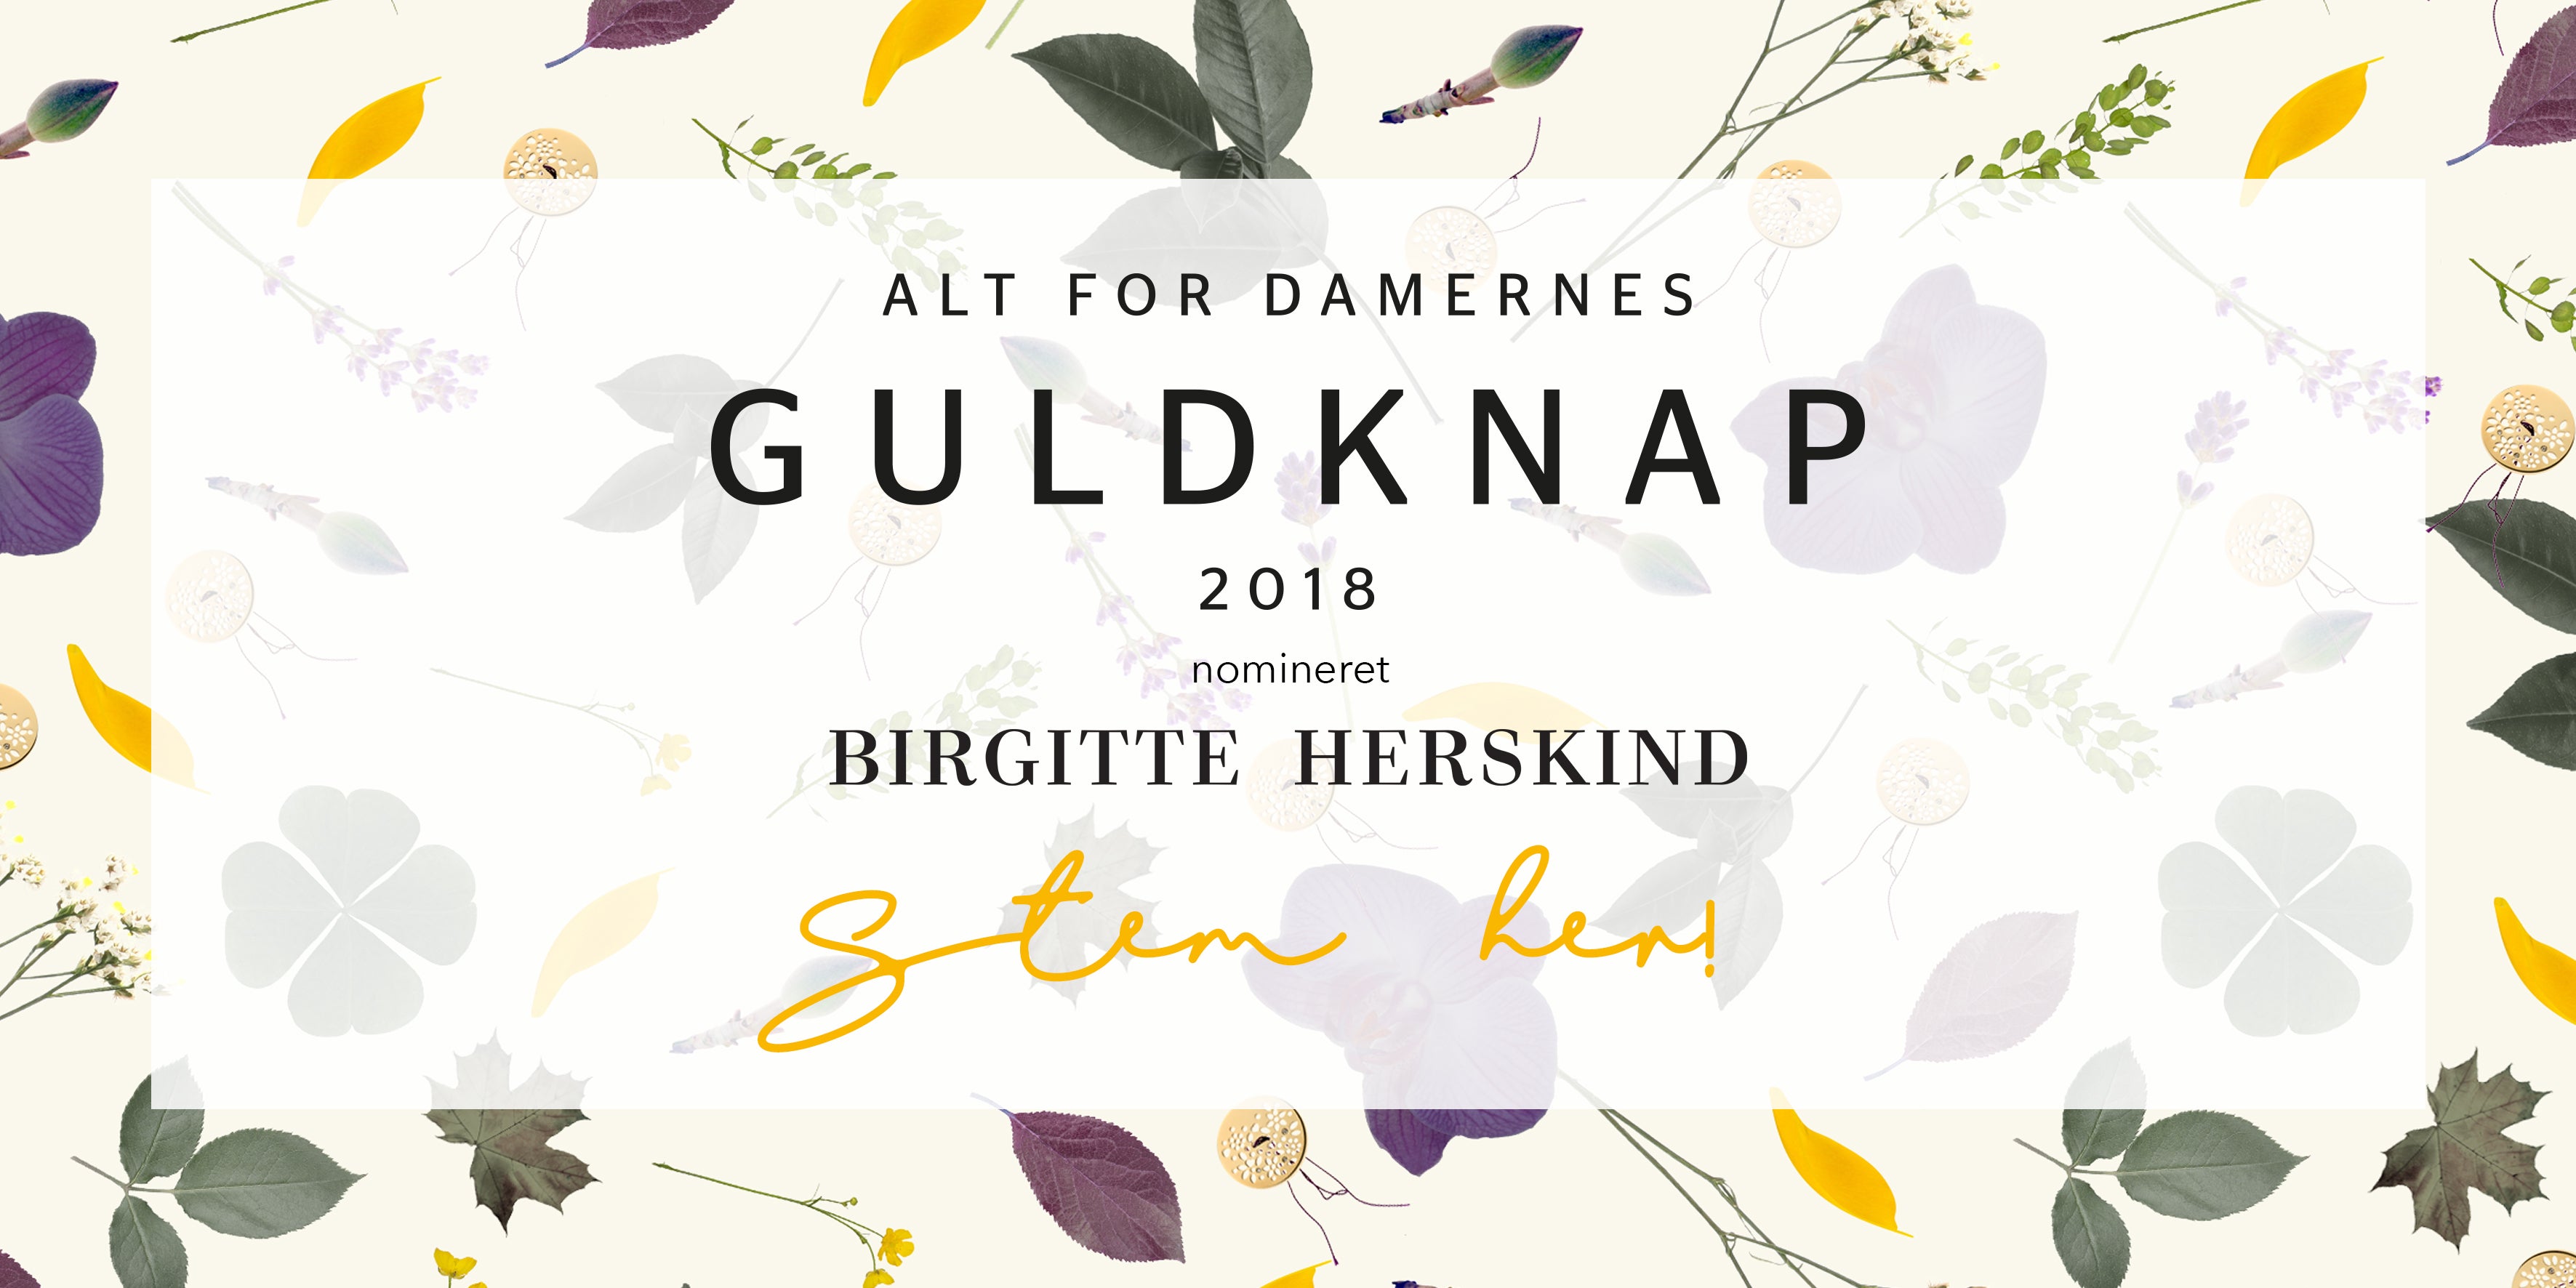 Nominated - Alt For Damernes Guldknap 2018